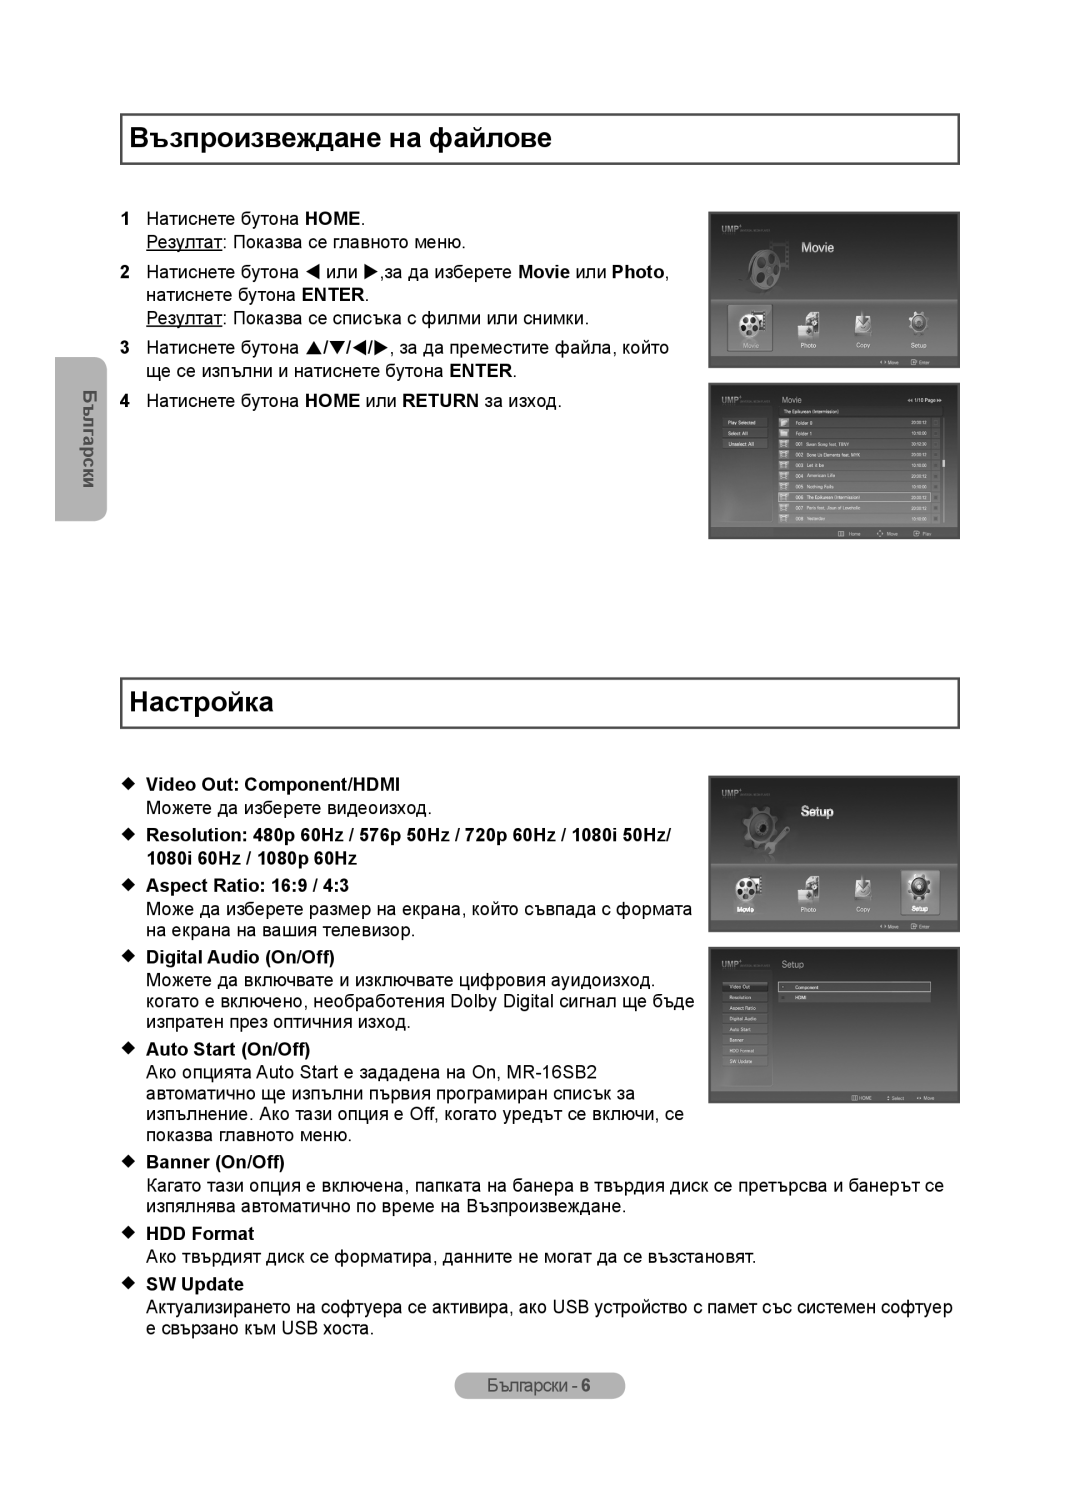 Samsung MR-16SB2 Възпроизвеждане на файлове, Настройка,  Video Out Component/HDMI,  Aspect Ratio 169,  Banner On/Off 